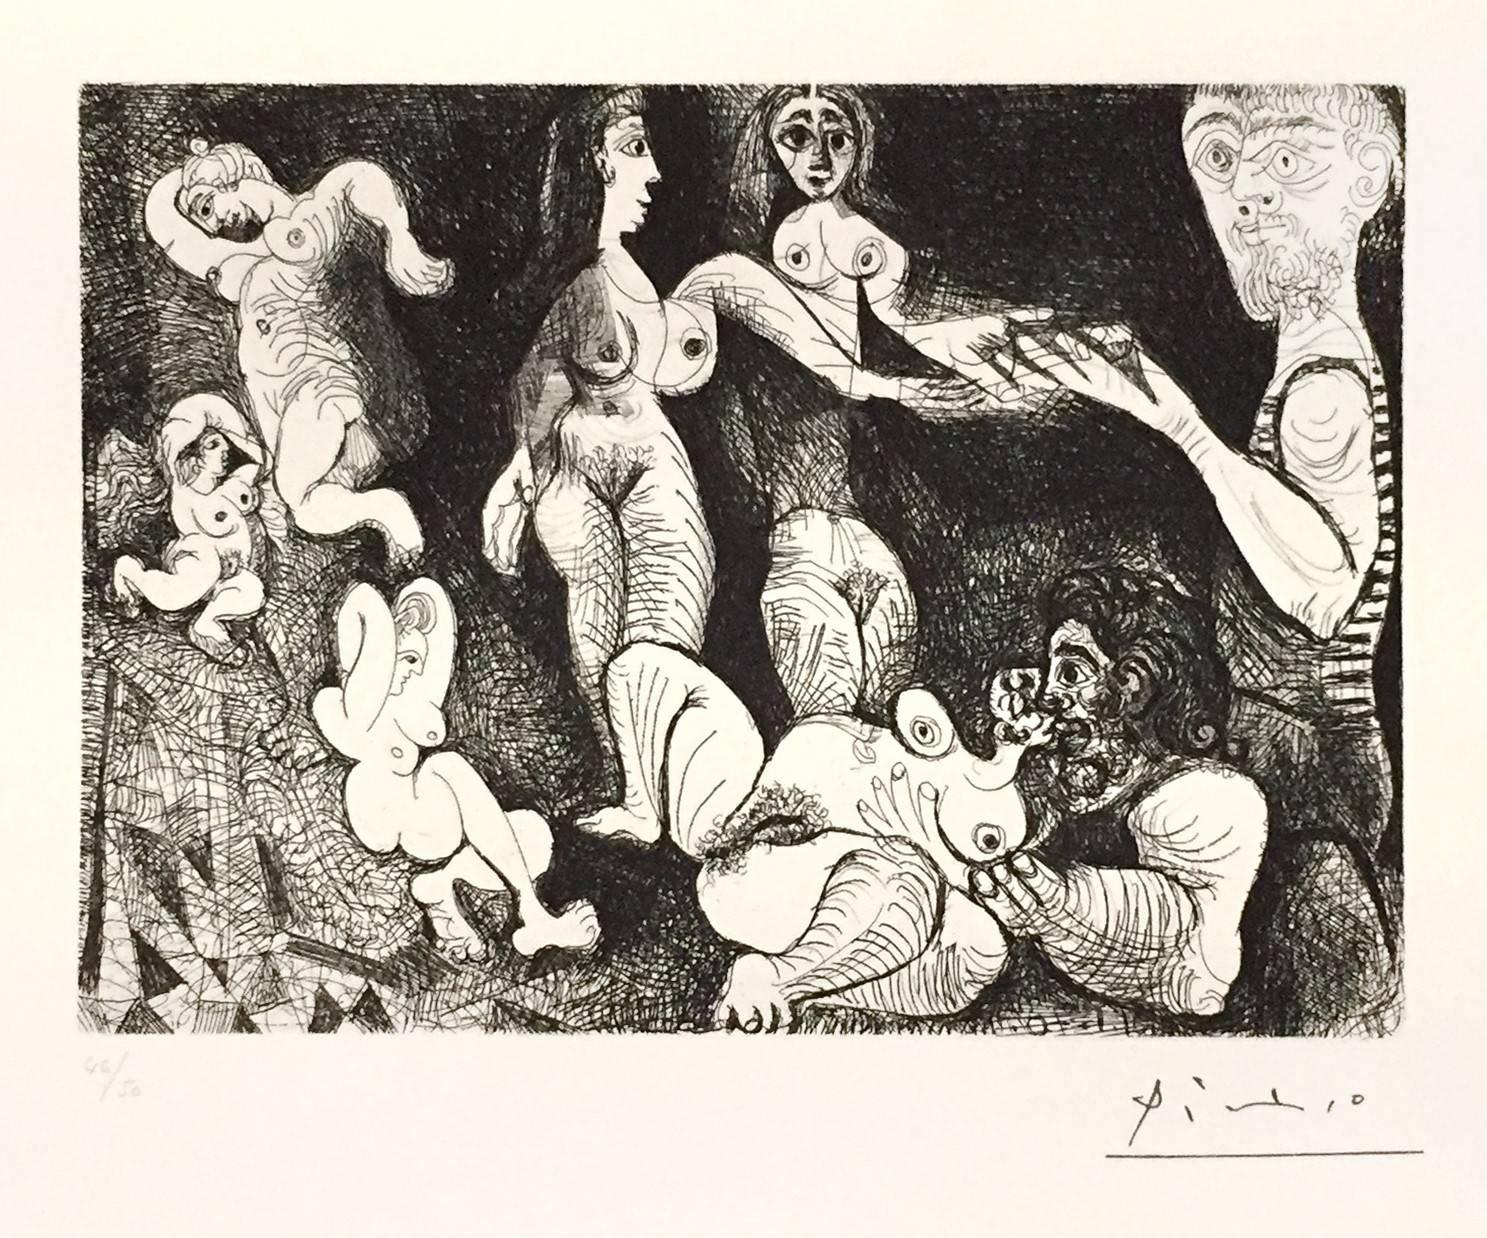 Pablo Picasso Print - Marin Réveur avec Deux Femmes - Original Etching by P. Picasso - 1970